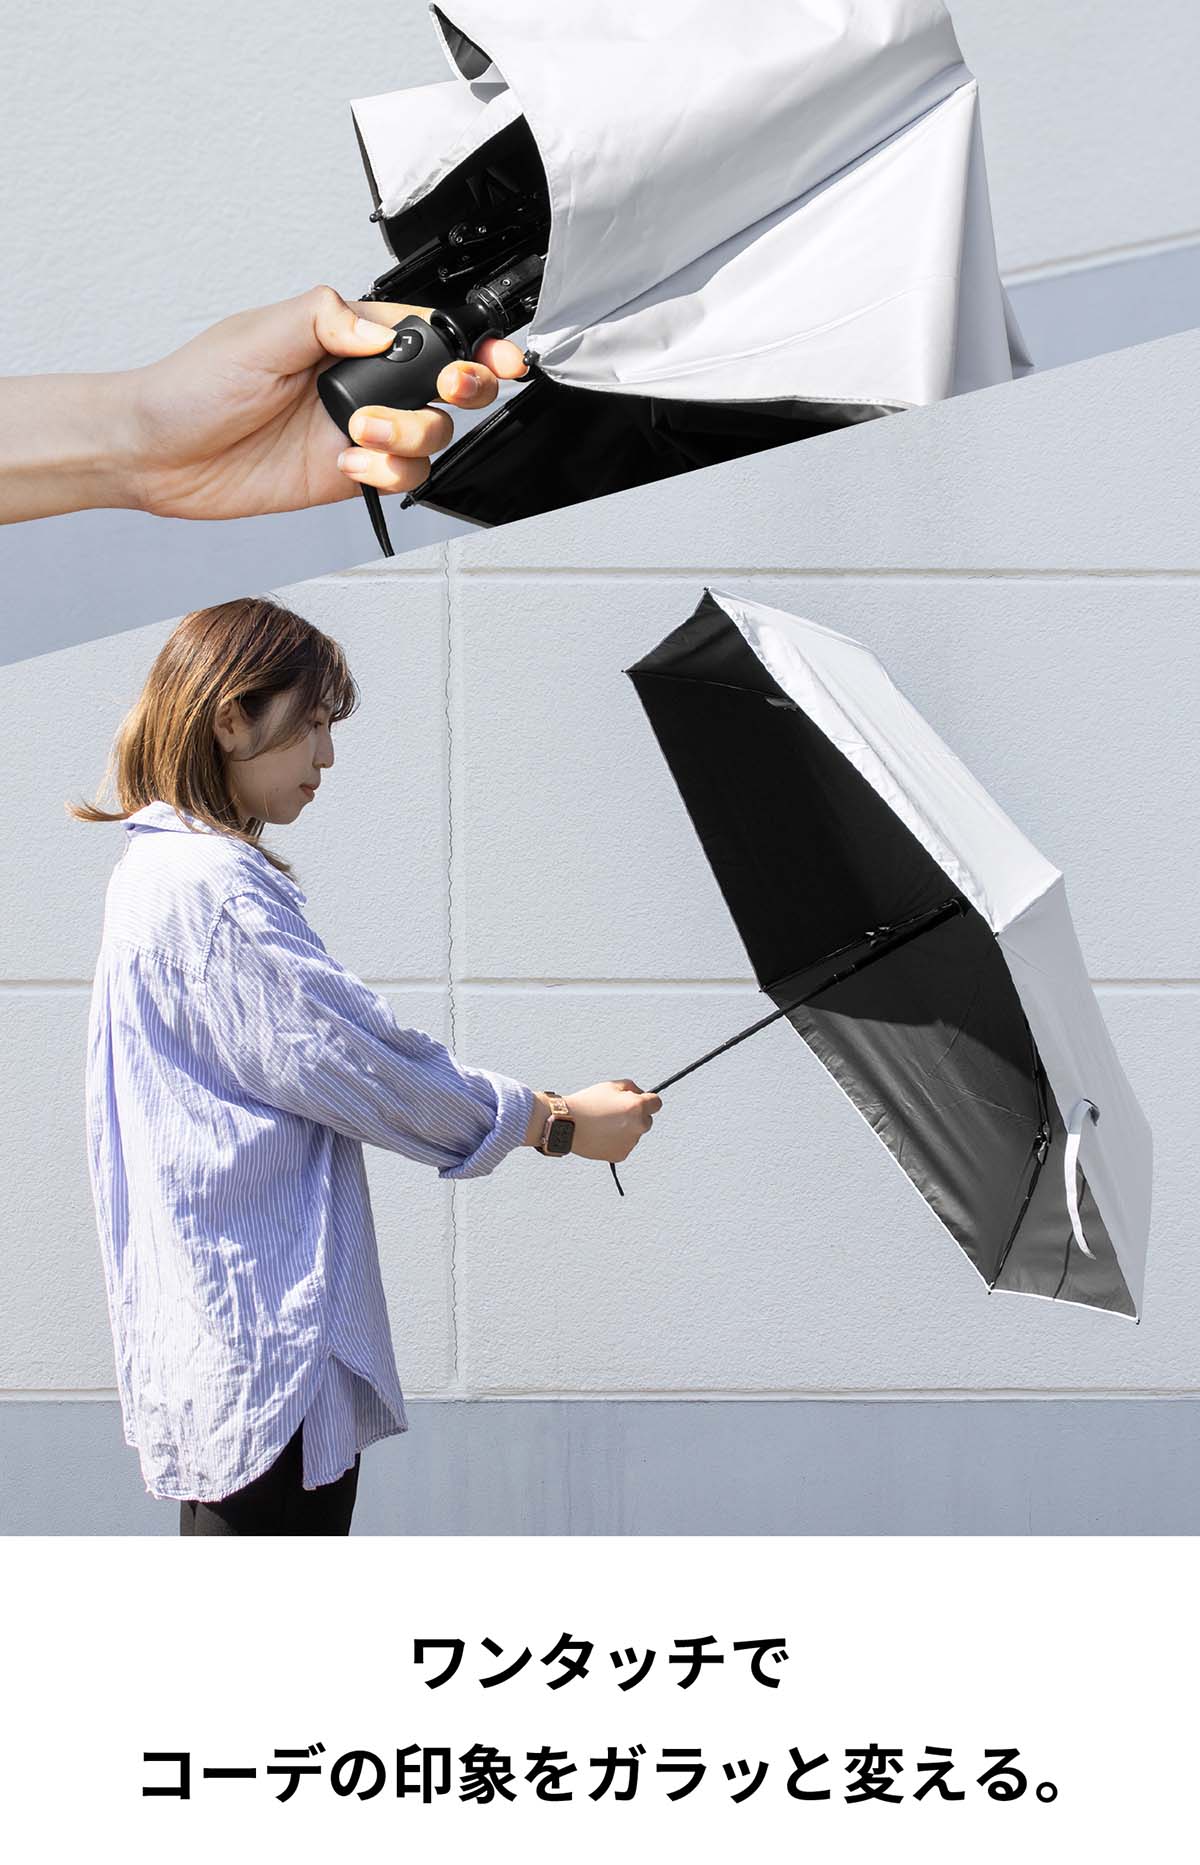 折りたたみ傘 日傘 軽量 自動開閉 コンパクト 細い 軽い 遮光 遮熱 ヒートブロックベリカル 紫外線対策 夏 ギフト プレゼント